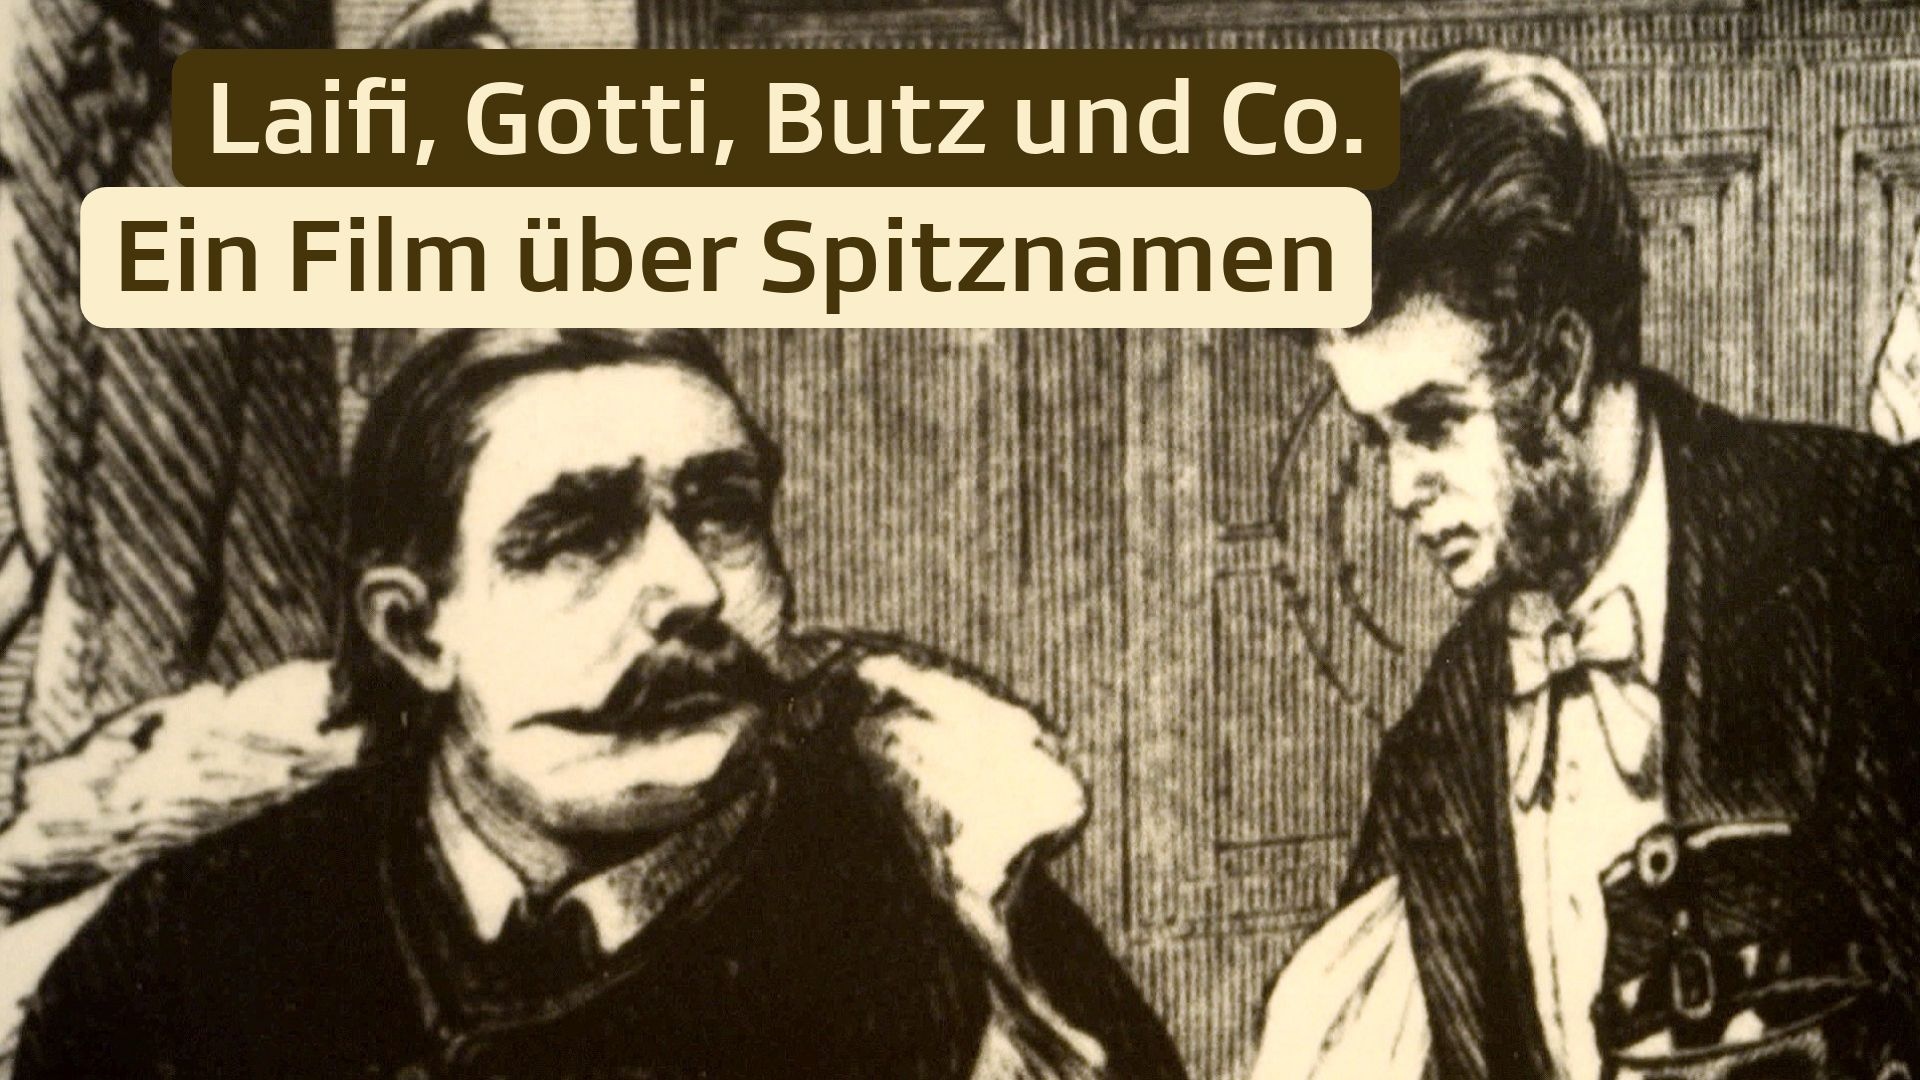 Laifi, Gotti, Butz und Co. – Ein Film über Spitznamen